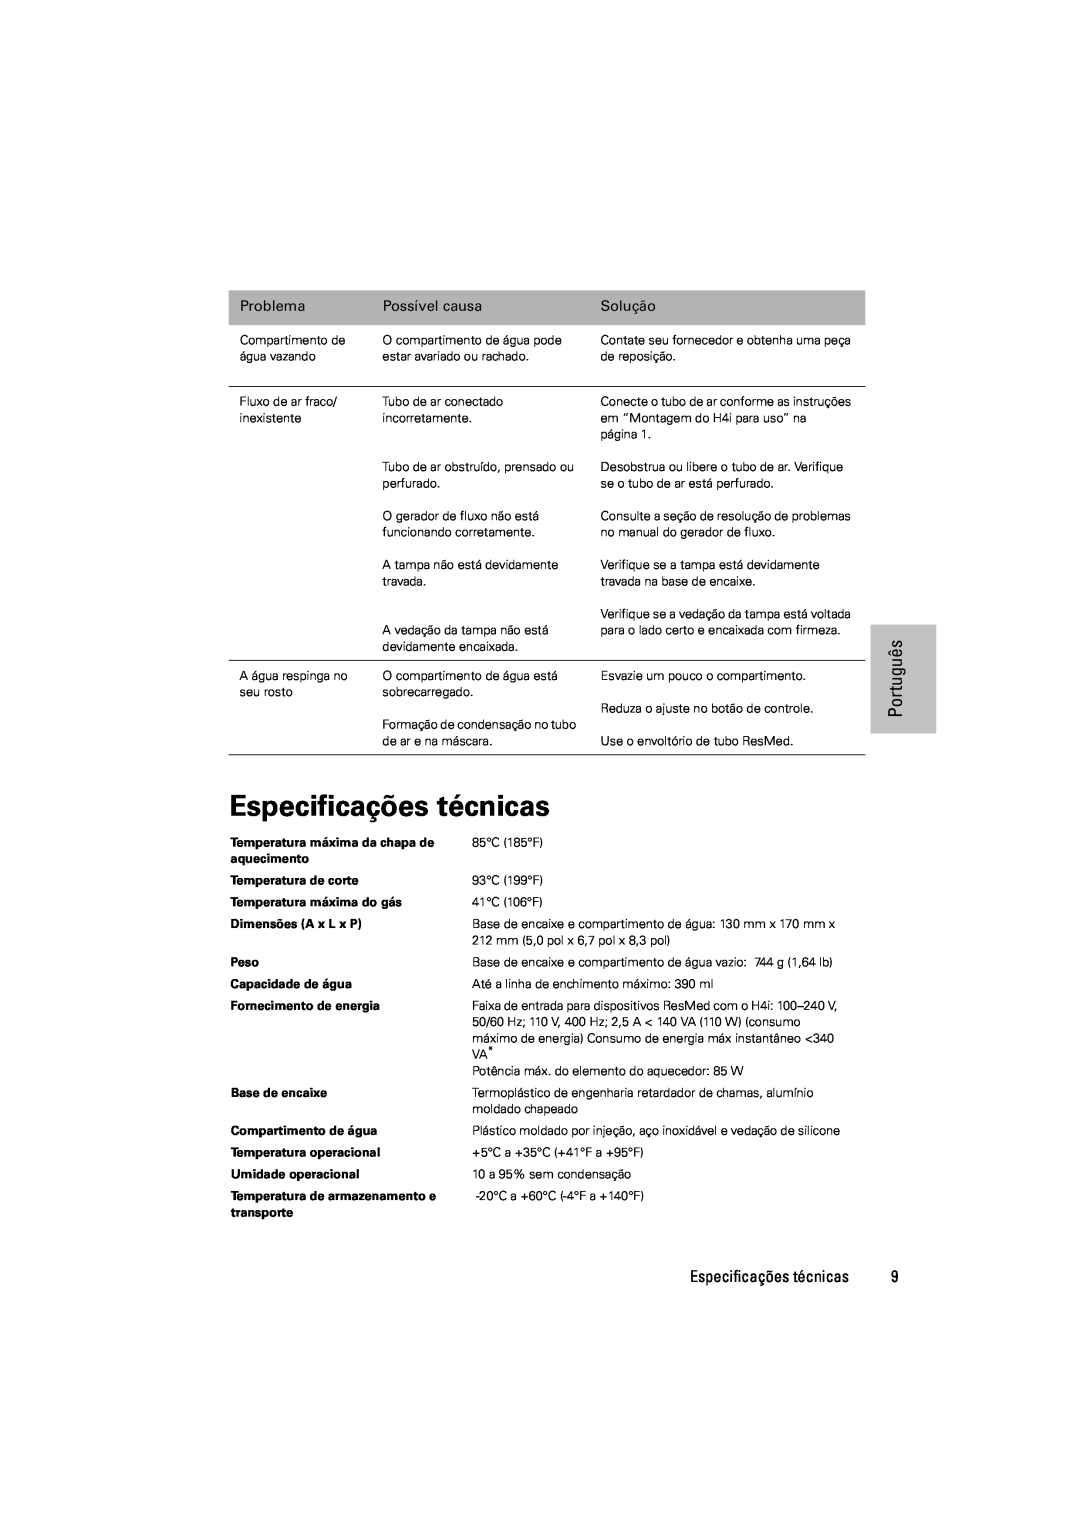 ResMed 248671/1 manual Especificações técnicas, Português, Problema, Possível causa, Solução 